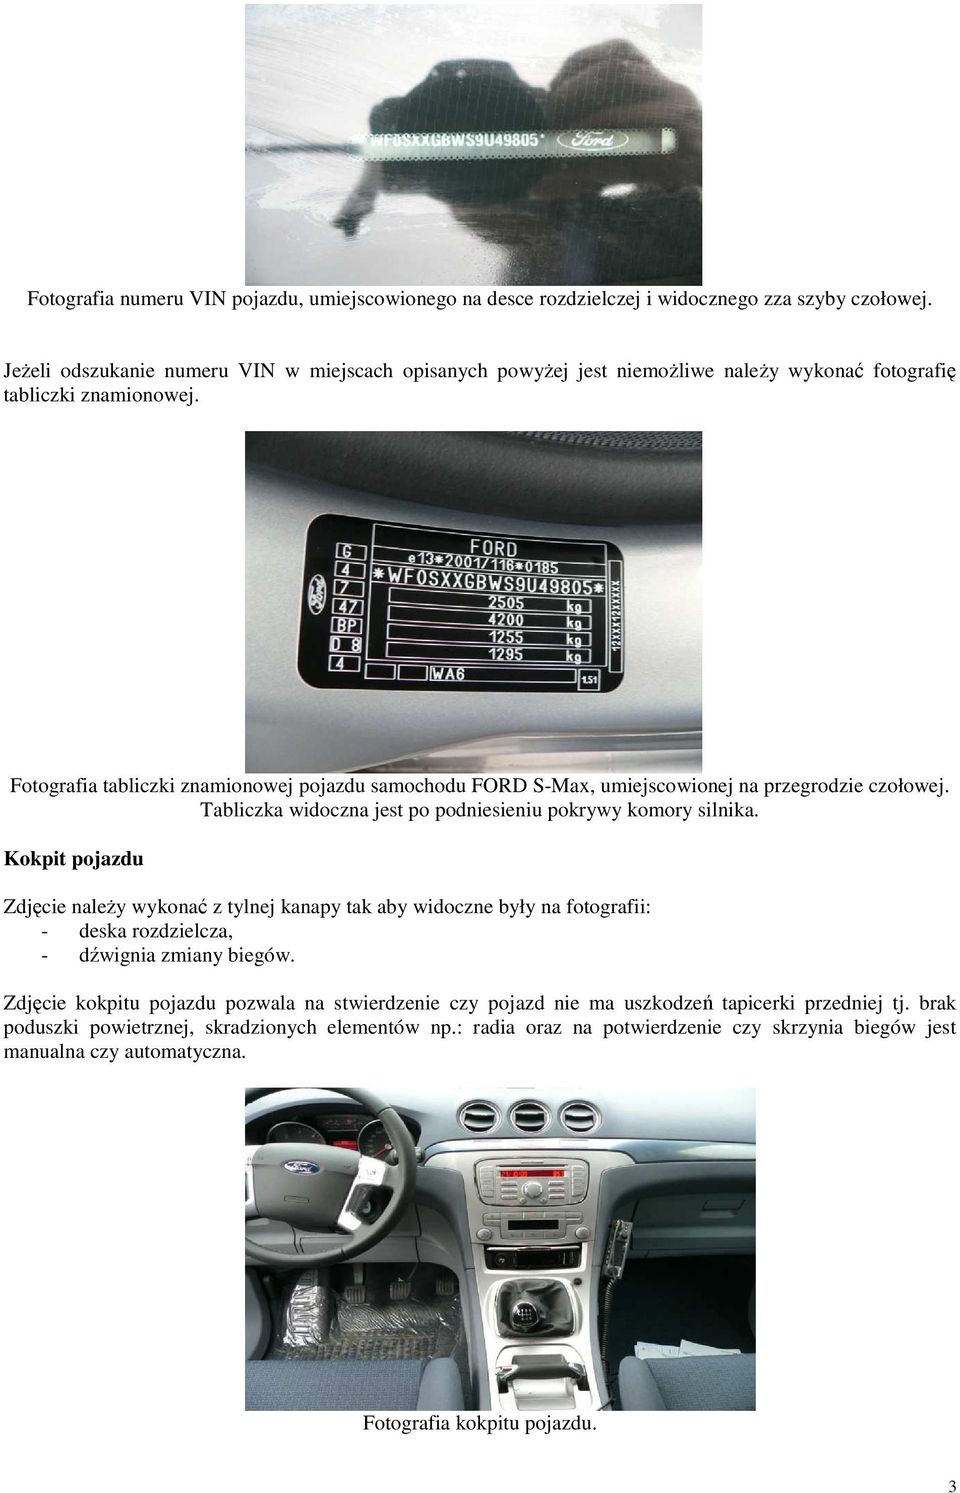 Fotografia tabliczki znamionowej pojazdu samochodu FORD S-Max, umiejscowionej na przegrodzie czołowej. Tabliczka widoczna jest po podniesieniu pokrywy komory silnika.